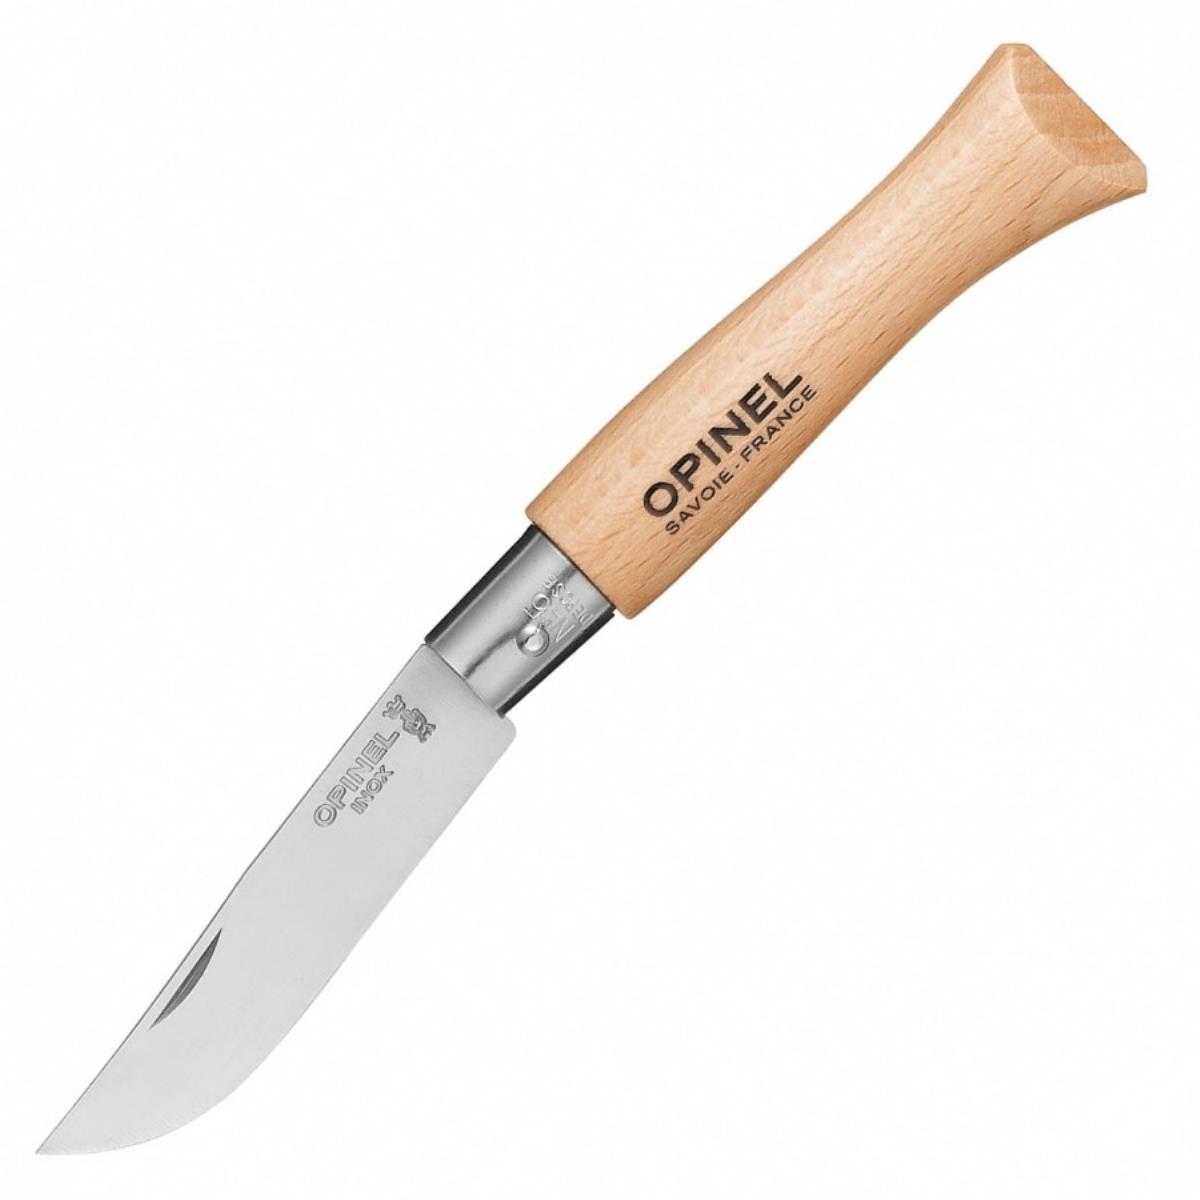 Нож №5 VRI Tradition Inox (нержавеющая сталь, рукоять бук, длина клинка 6 см) 0010729 OPINEL